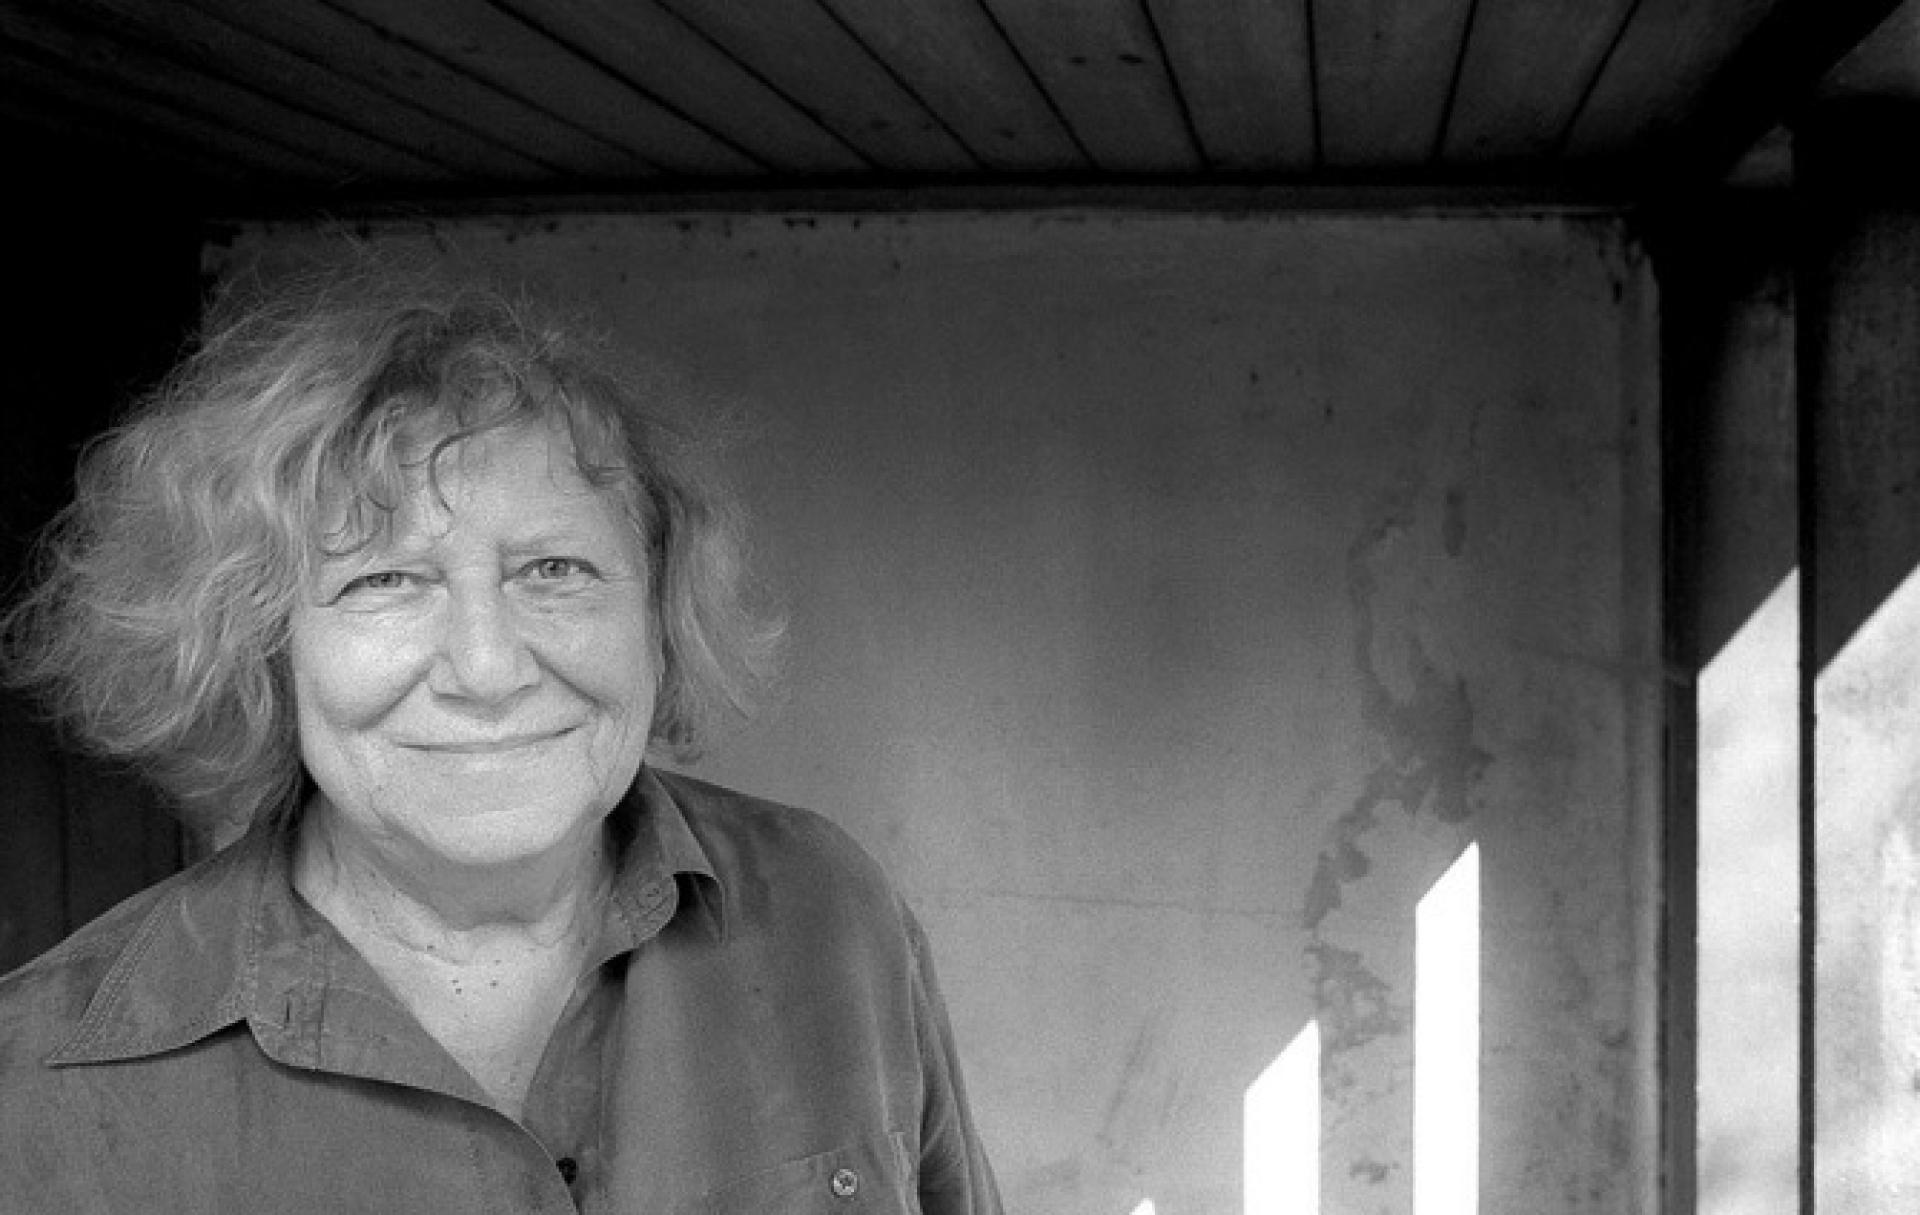 Alena Šrámková has been active since the 1950s | Photo by Petr Jedinák